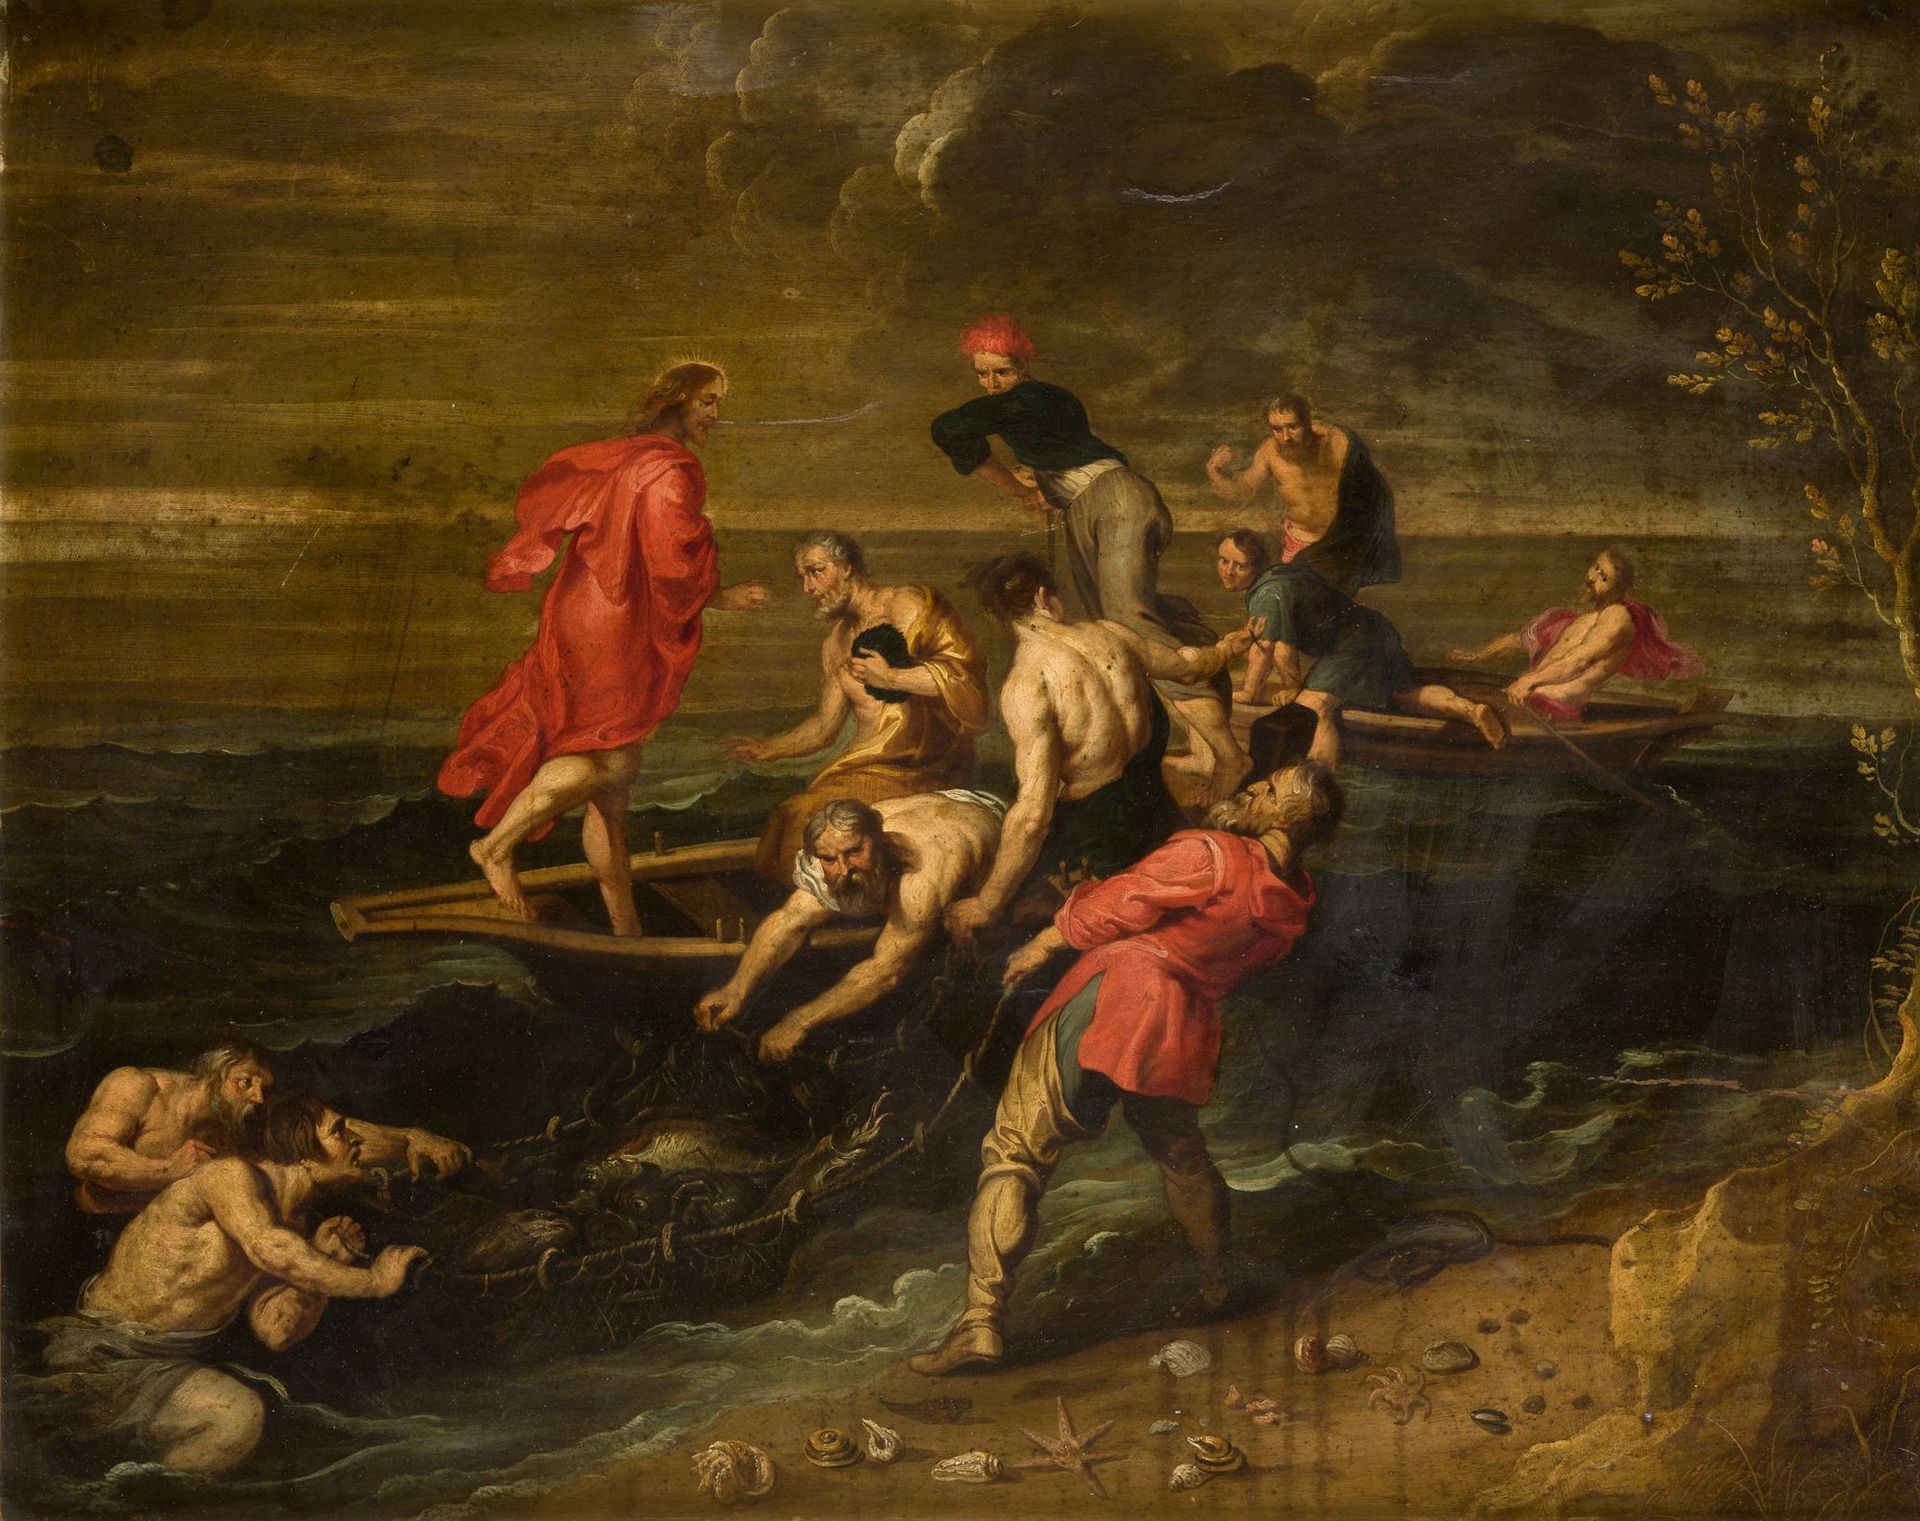 CIRCULO DE RUBENS (C. 17th / ?) "The miraculous catch" Huile sur cuivre. 68 x 85&hellip;